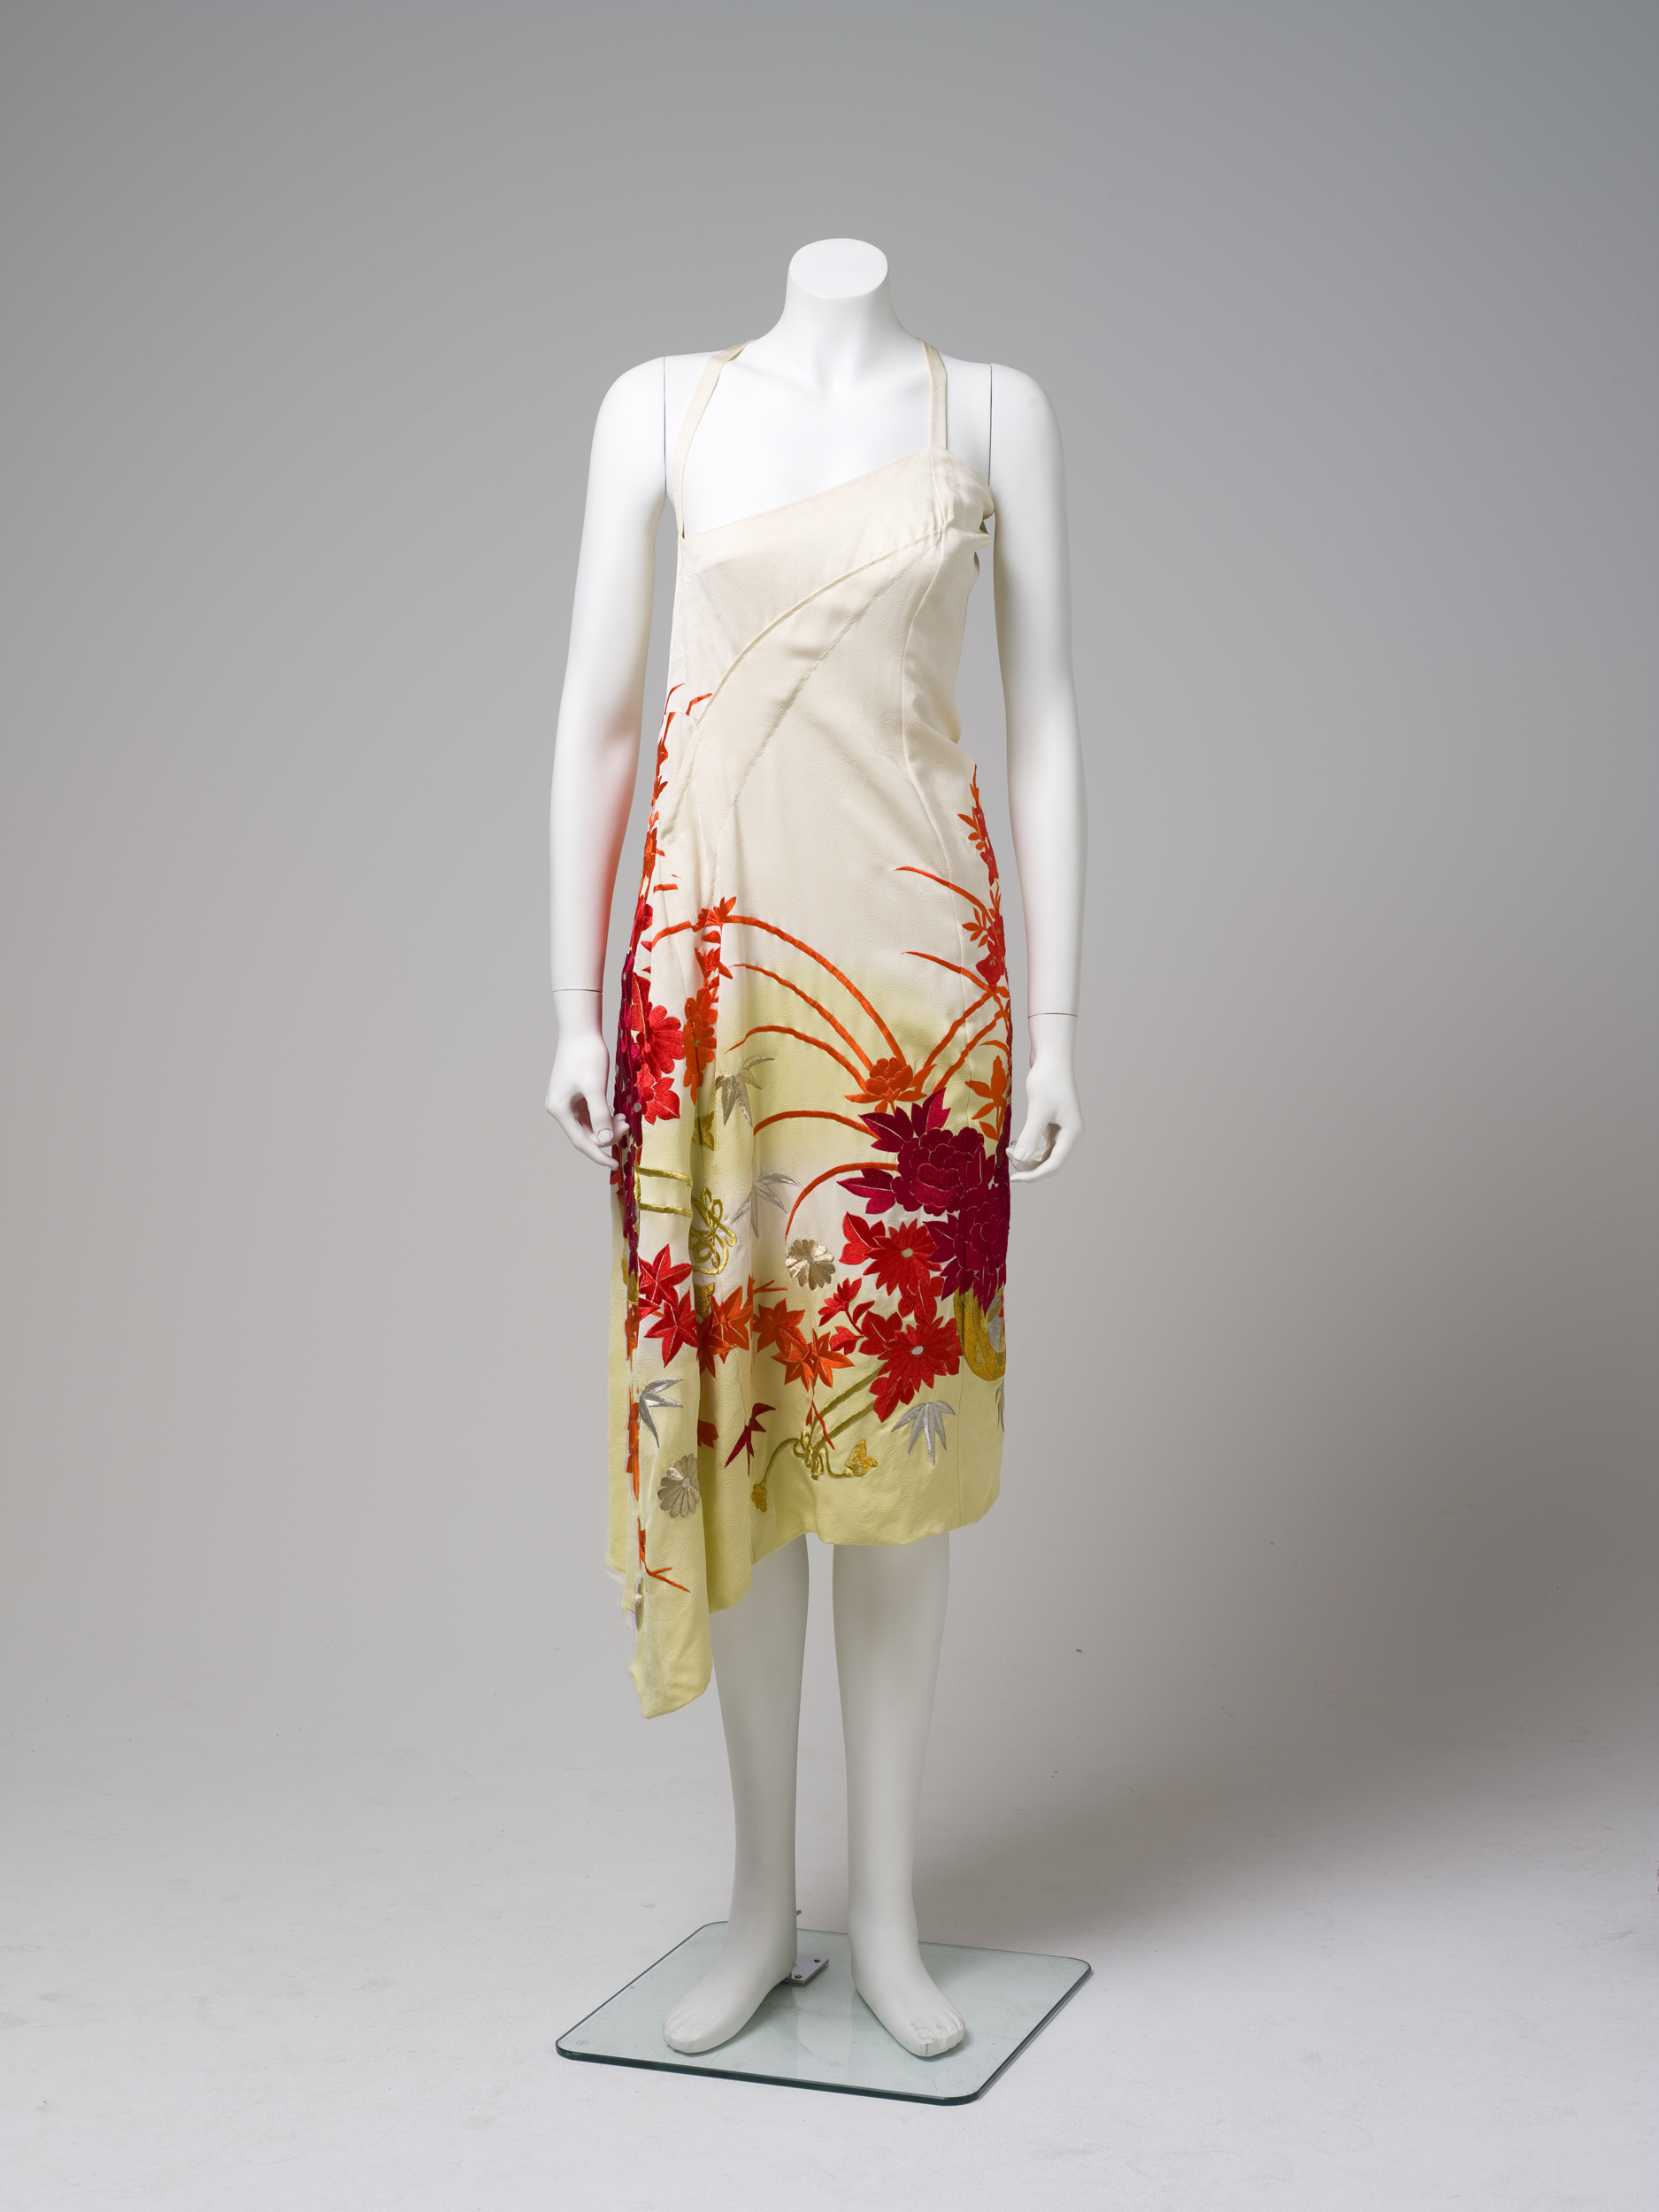 Dress by Akira Isogawa worn by Catherine Martin